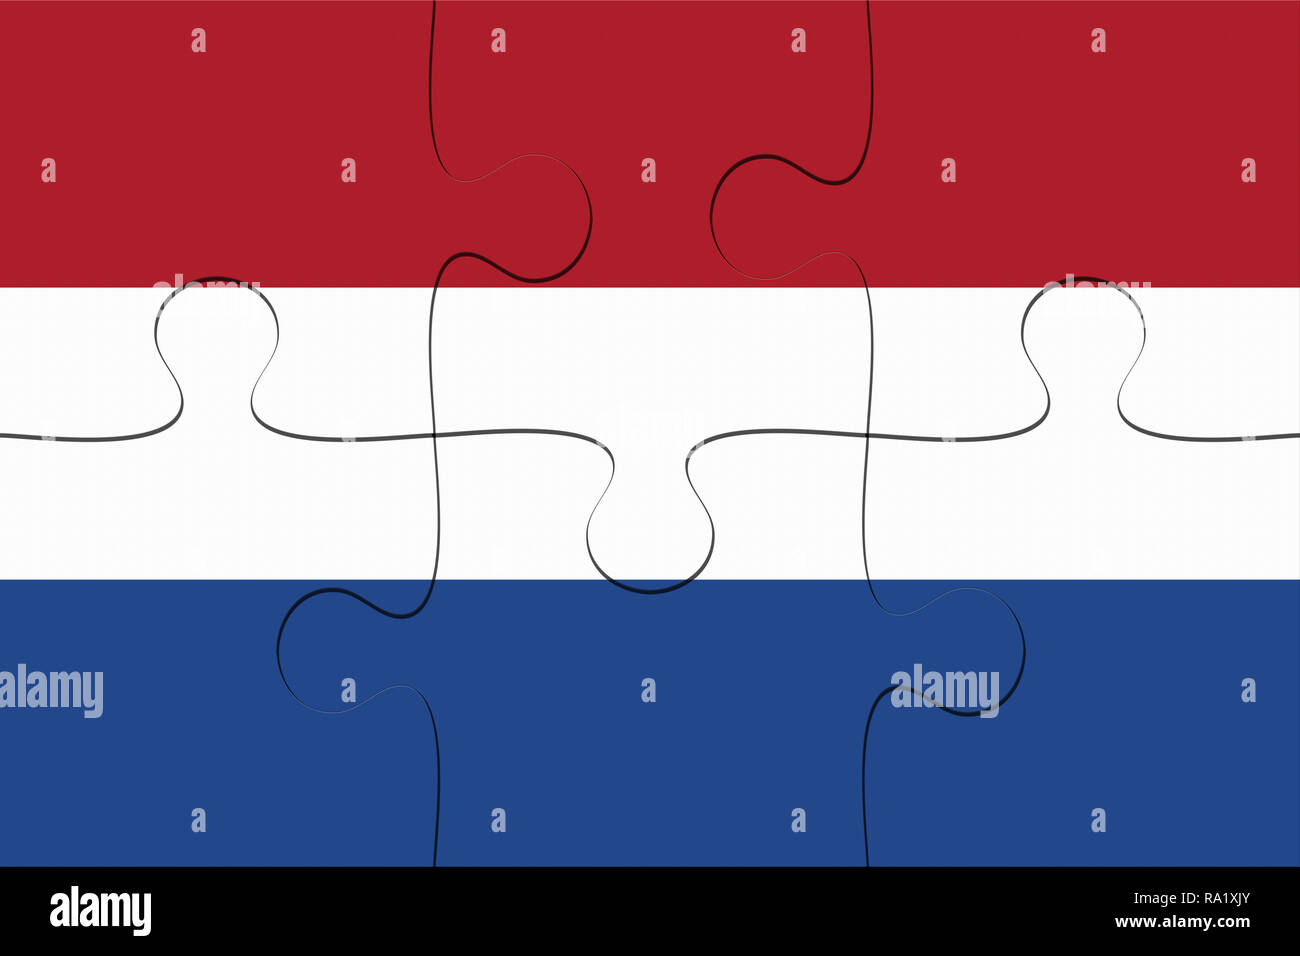 Netherlands Flag Jigsaw Puzzle, 3d illustration background Stock Photo -  Alamy